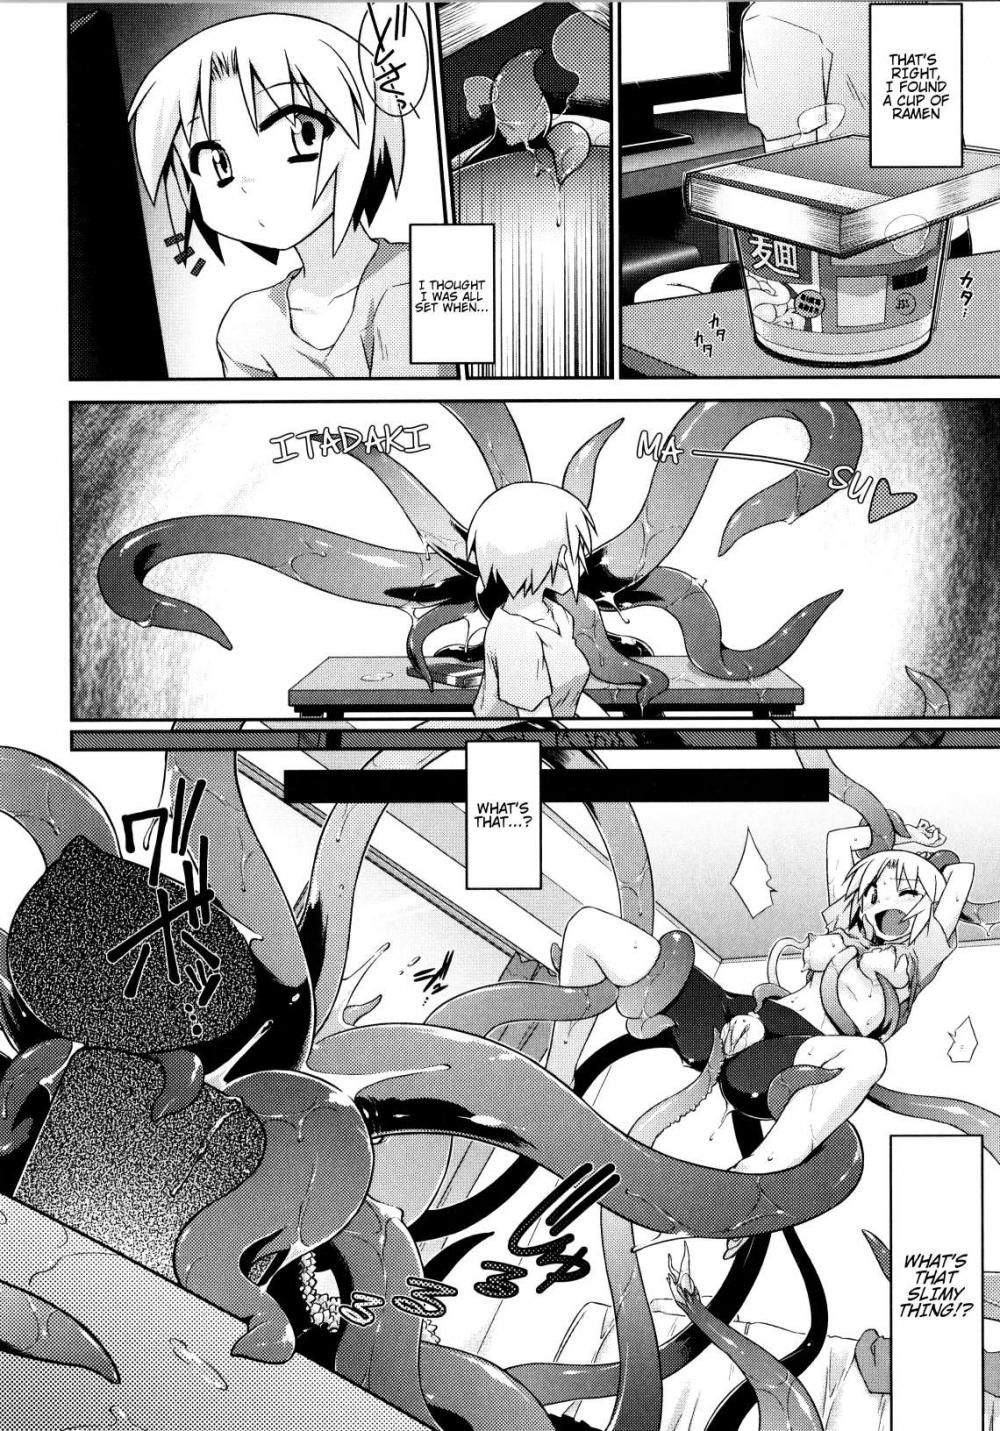 Hentai Manga Comic-3-funkan Fu-cking - Ready In 3 Minutes(Yori-Dori Ecstasy!!)-Read-6